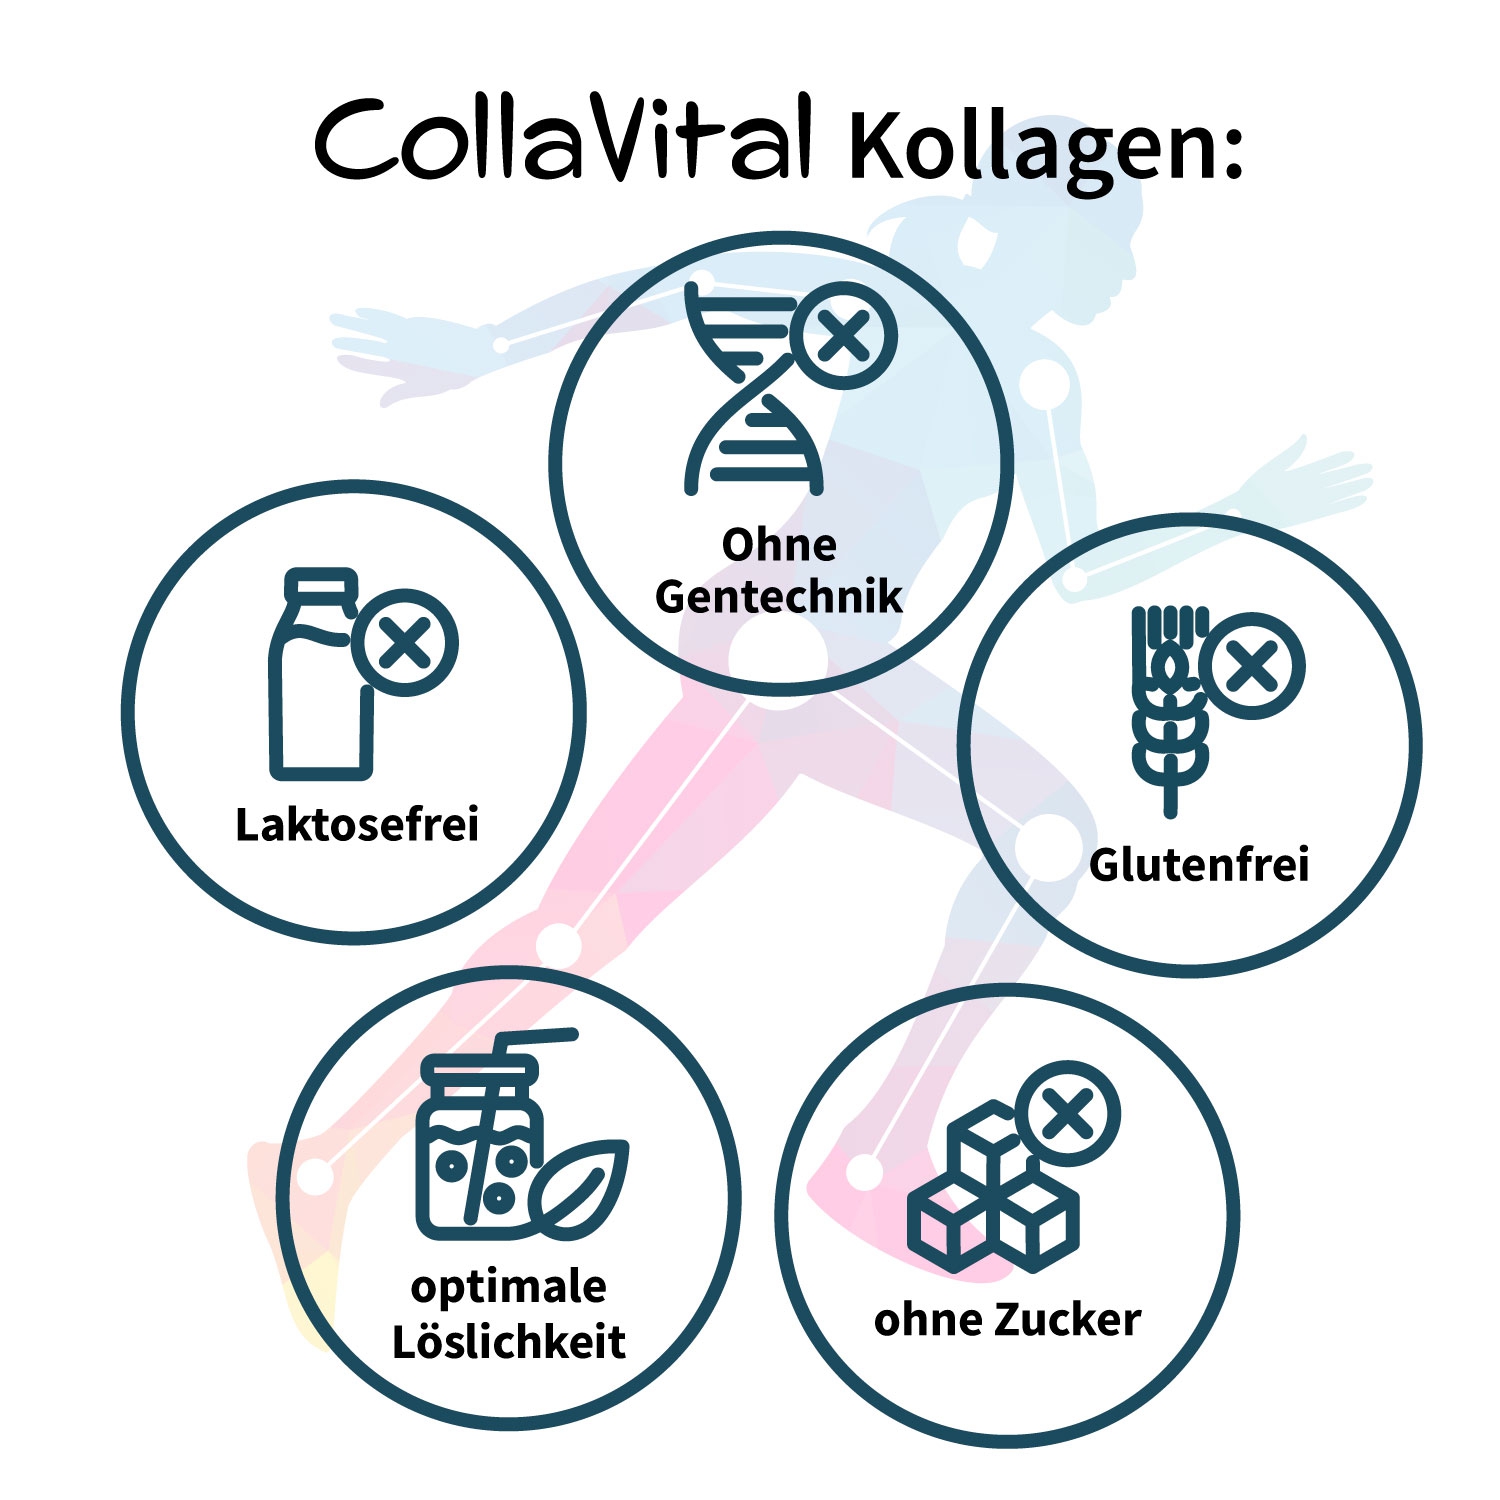 3 x Collavital® Human Collagen Pulver [300g] – Bioaktives Kollagen Hydrolysat